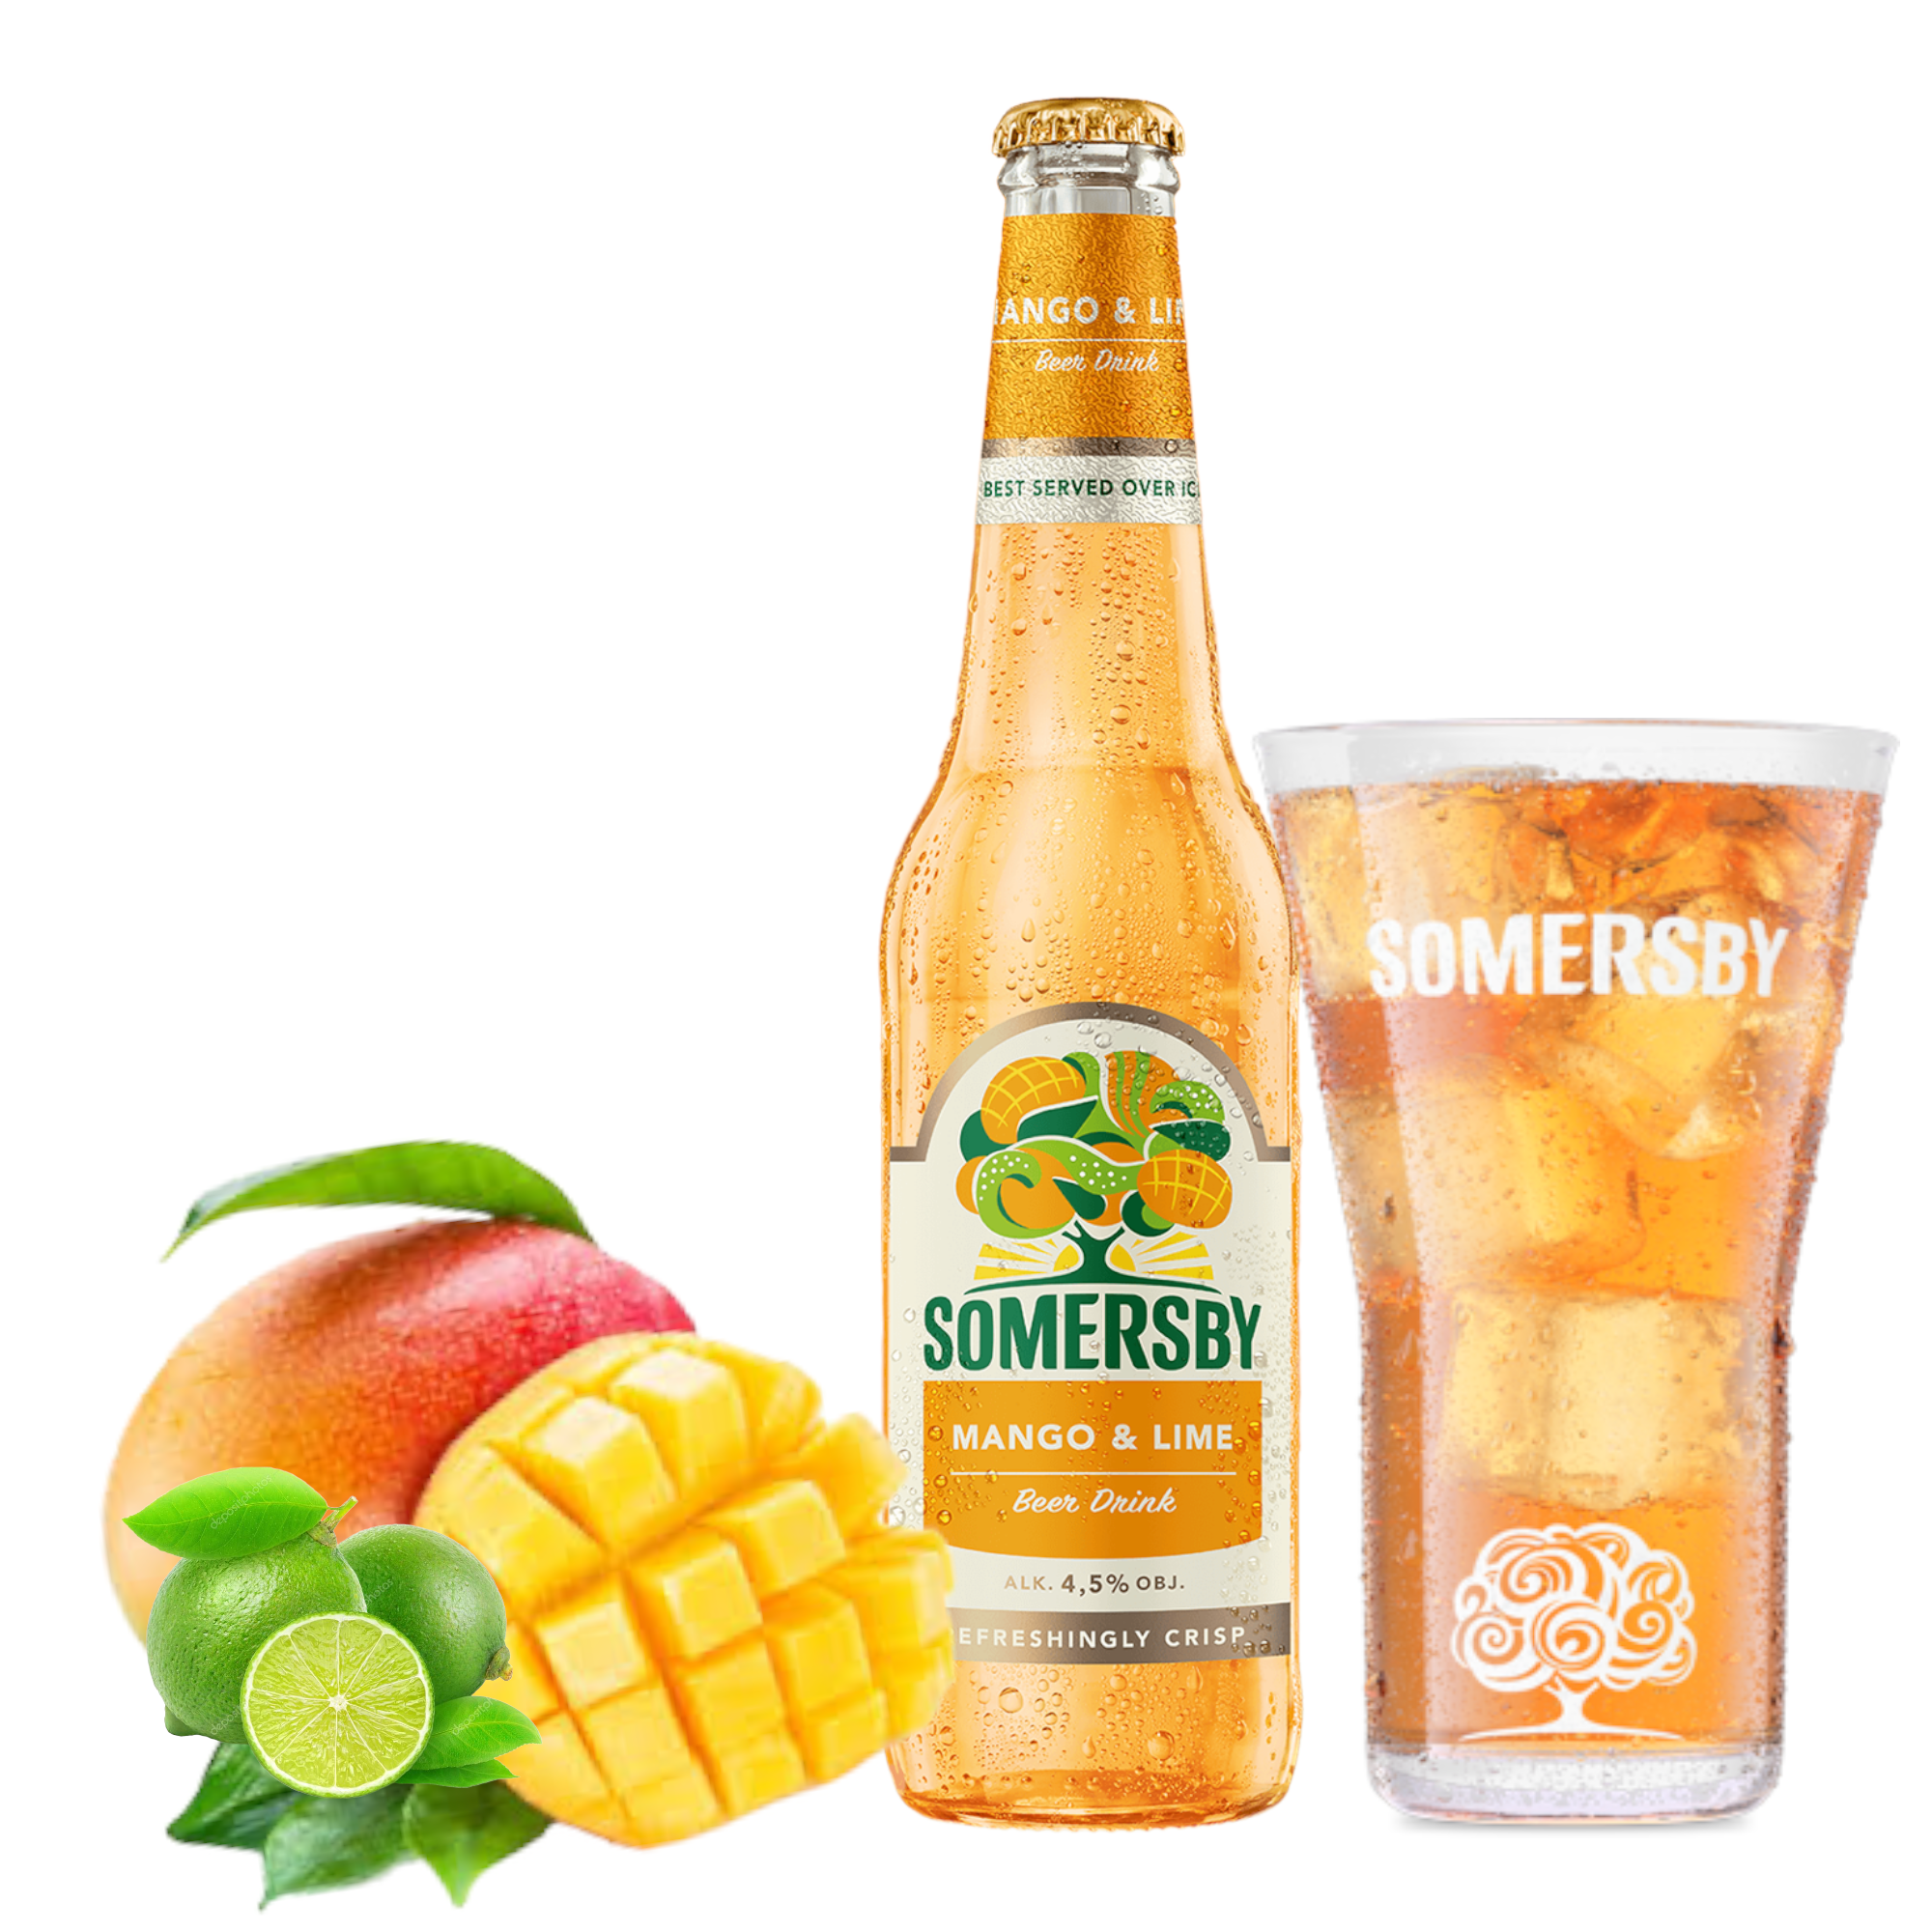 Somersby Mango & Lime 0,4l mit 4,5% Vol.- Biermischgetränk mit Mango & Limette